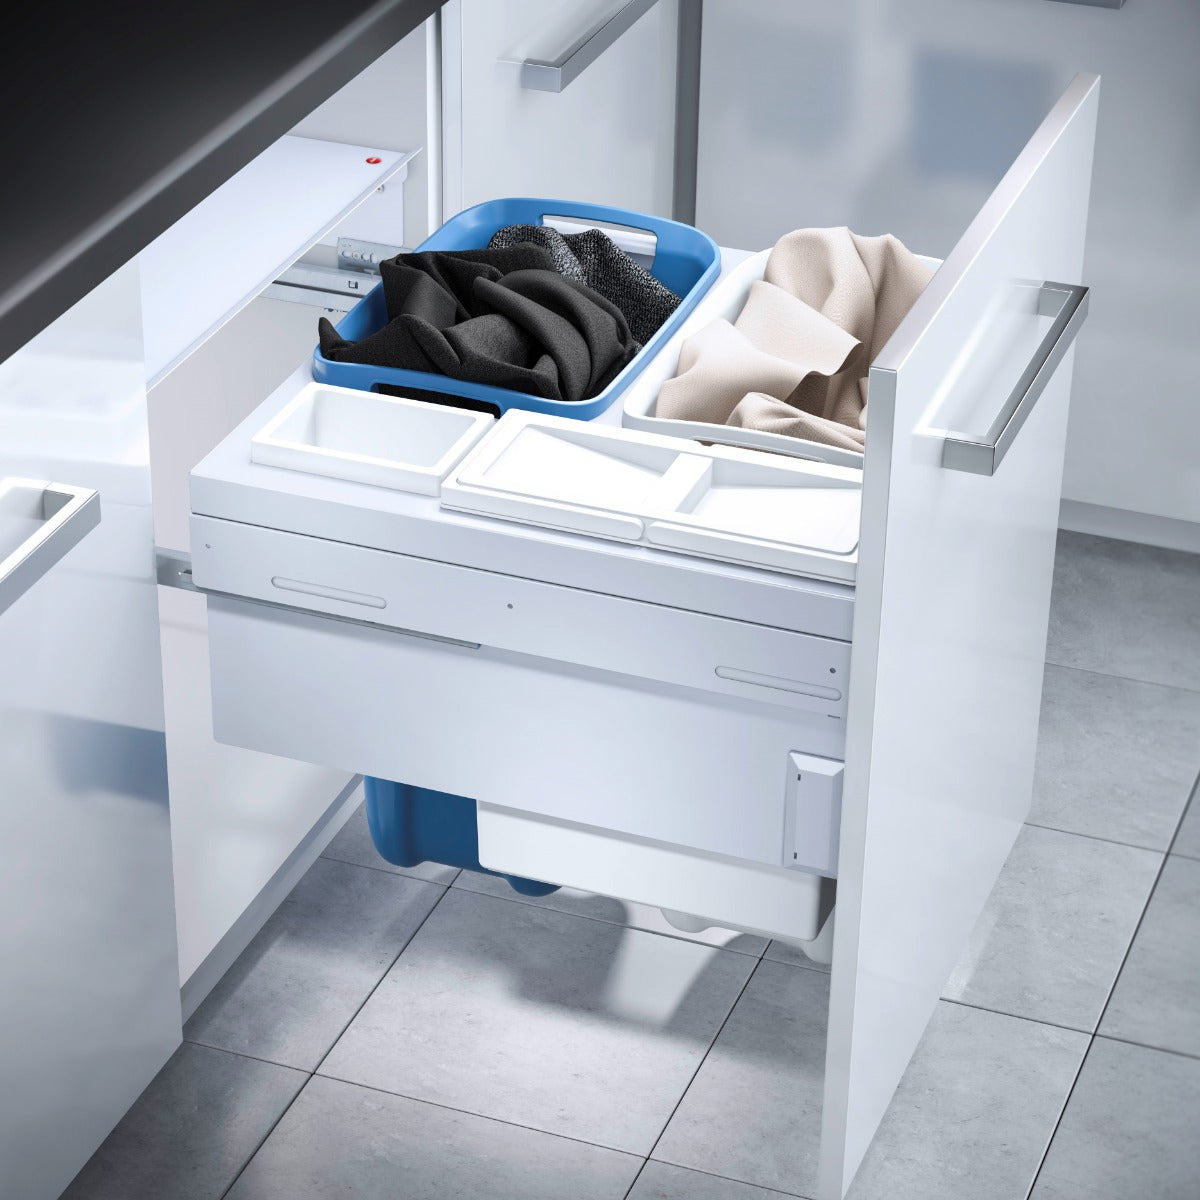 Hailo 4 Compartment Built in Laundry Bin 80.5L: 600mm Door